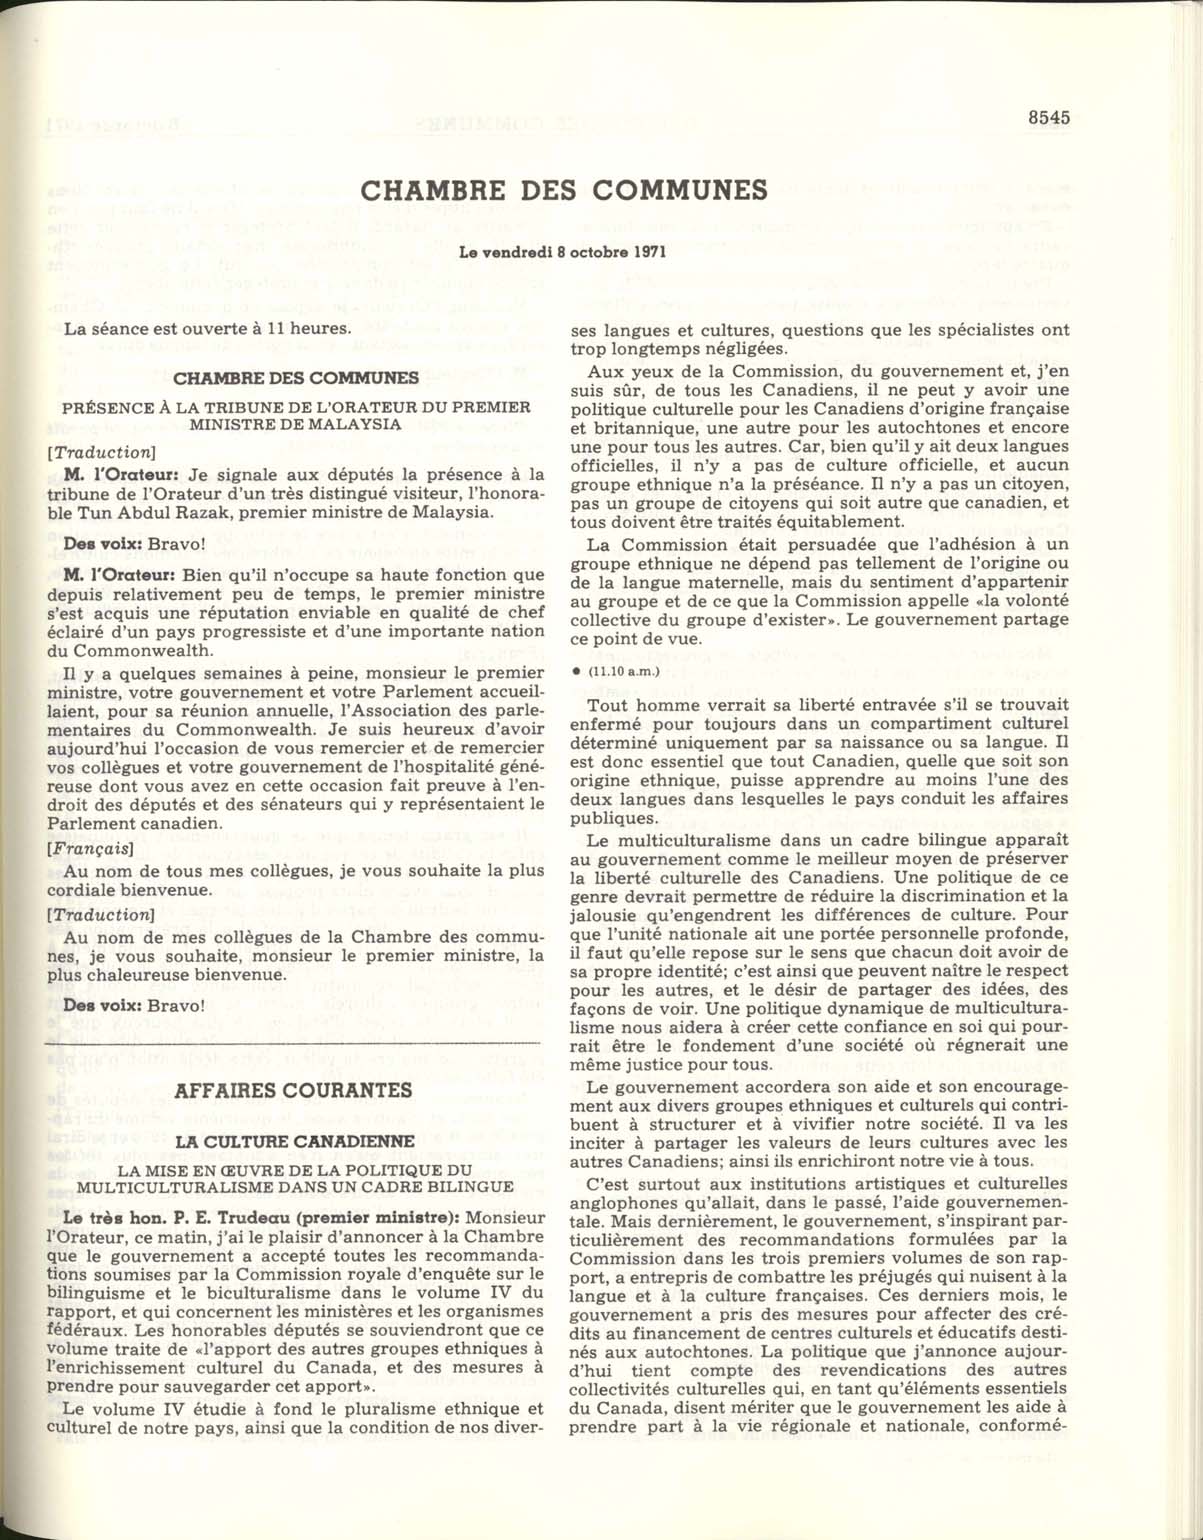 Page 8545 La politique canadienne du multiculturalisme de 1971